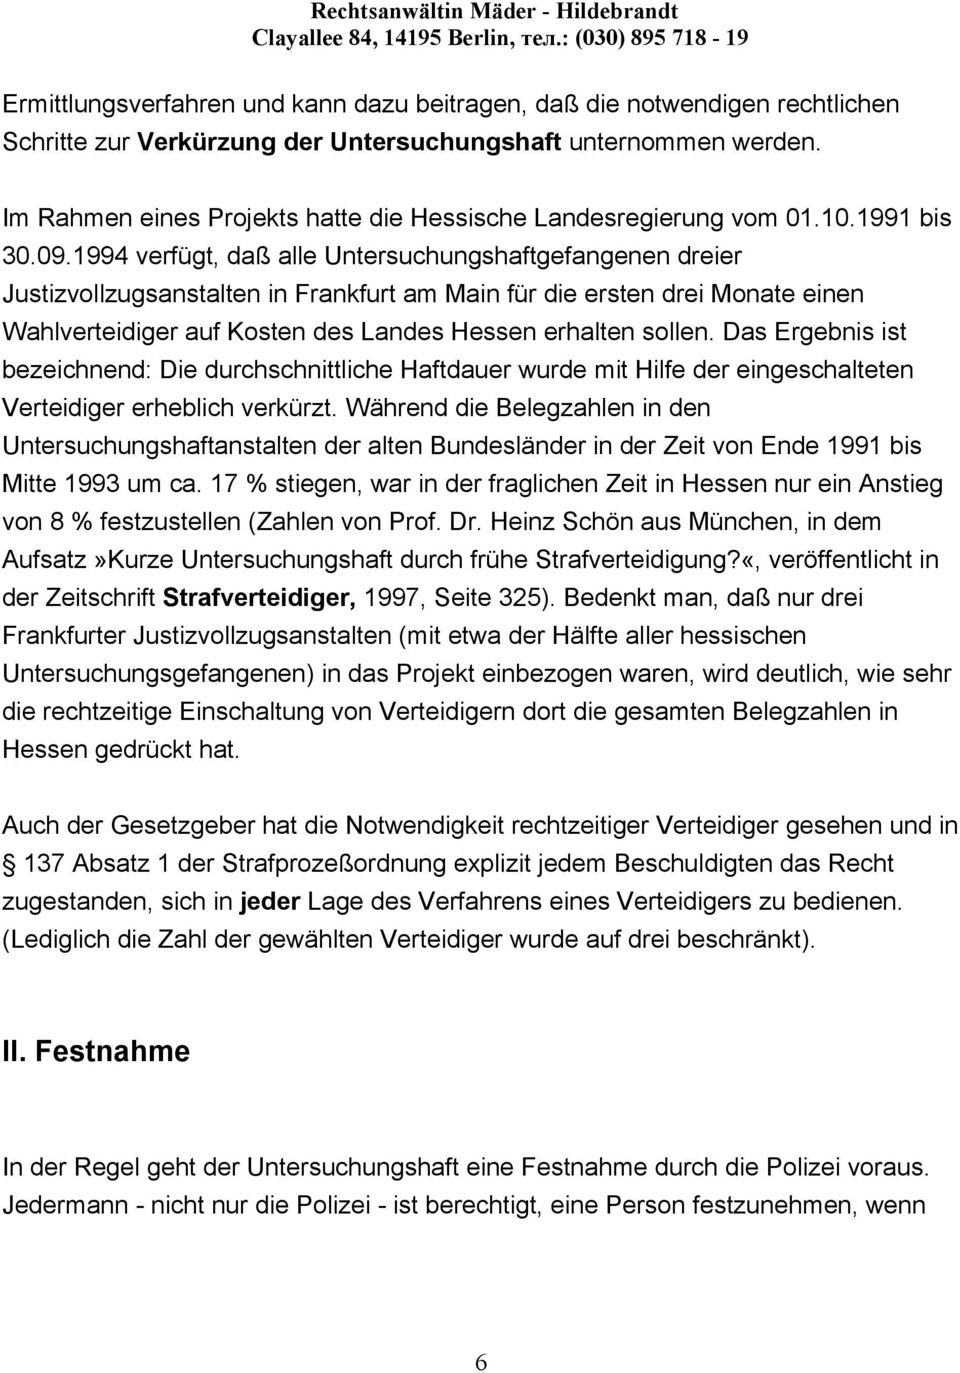 1994 verfügt, daß alle Untersuchungshaftgefangenen dreier Justizvollzugsanstalten in Frankfurt am Main für die ersten drei Monate einen Wahlverteidiger auf Kosten des Landes Hessen erhalten sollen.